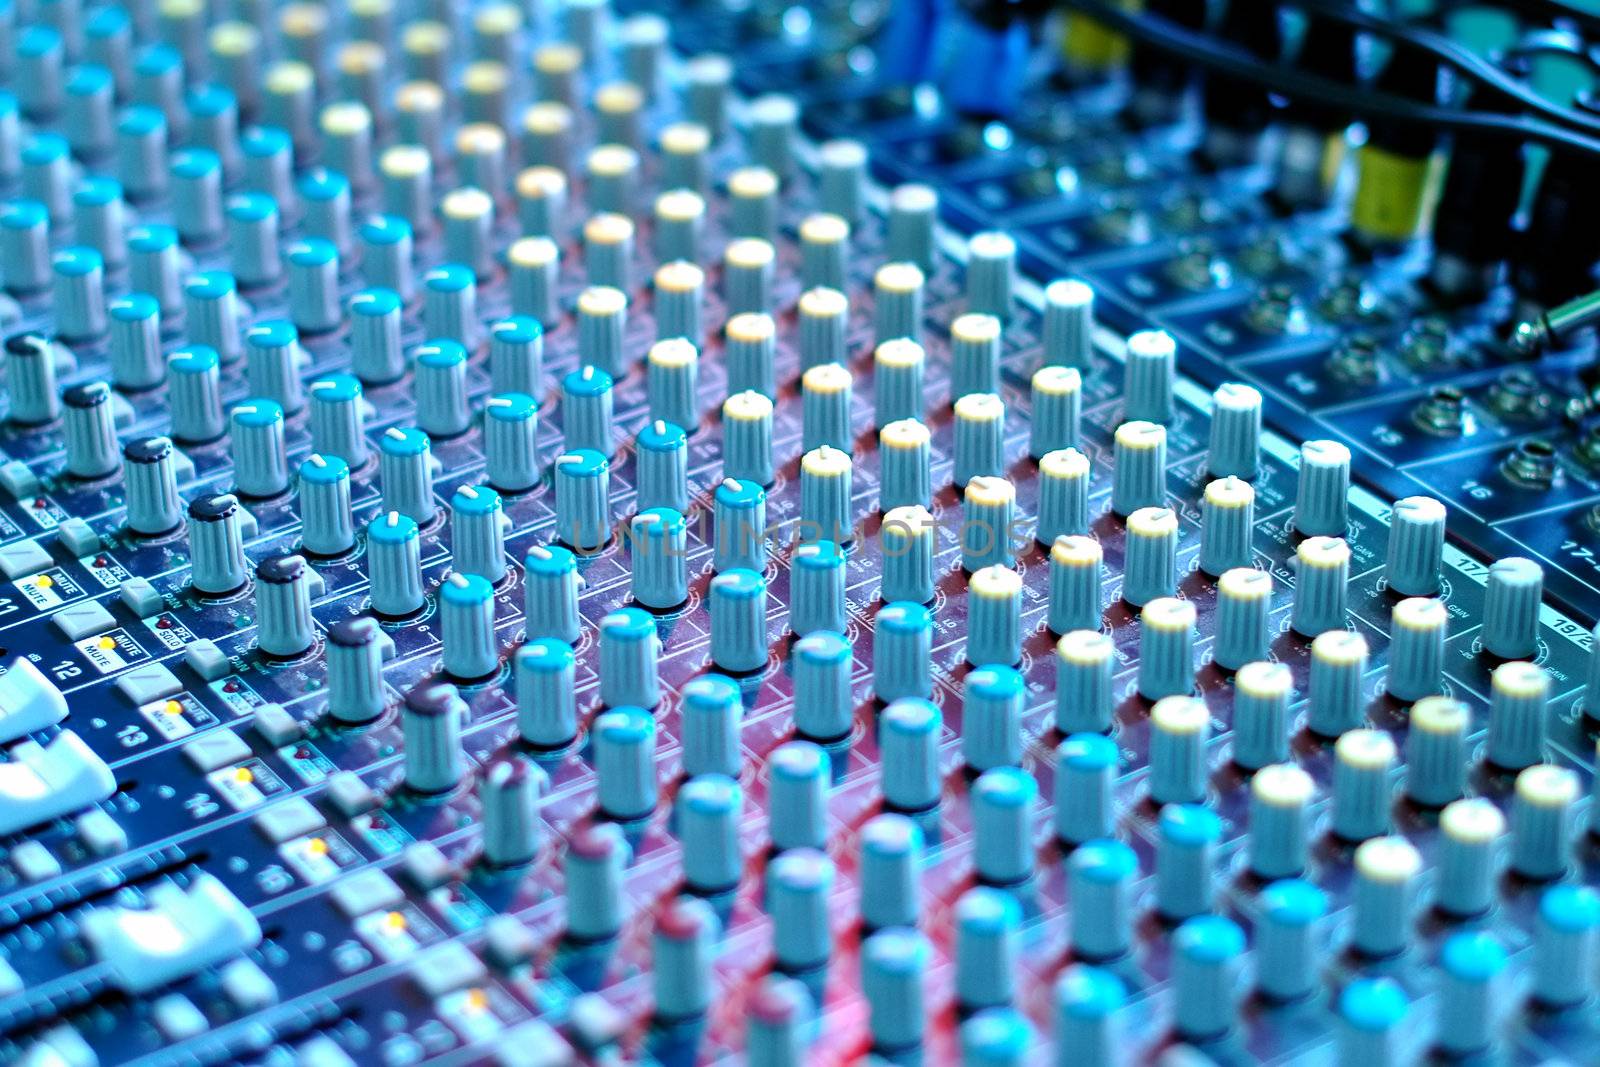 soundboard mixing desk under blue stage lighting